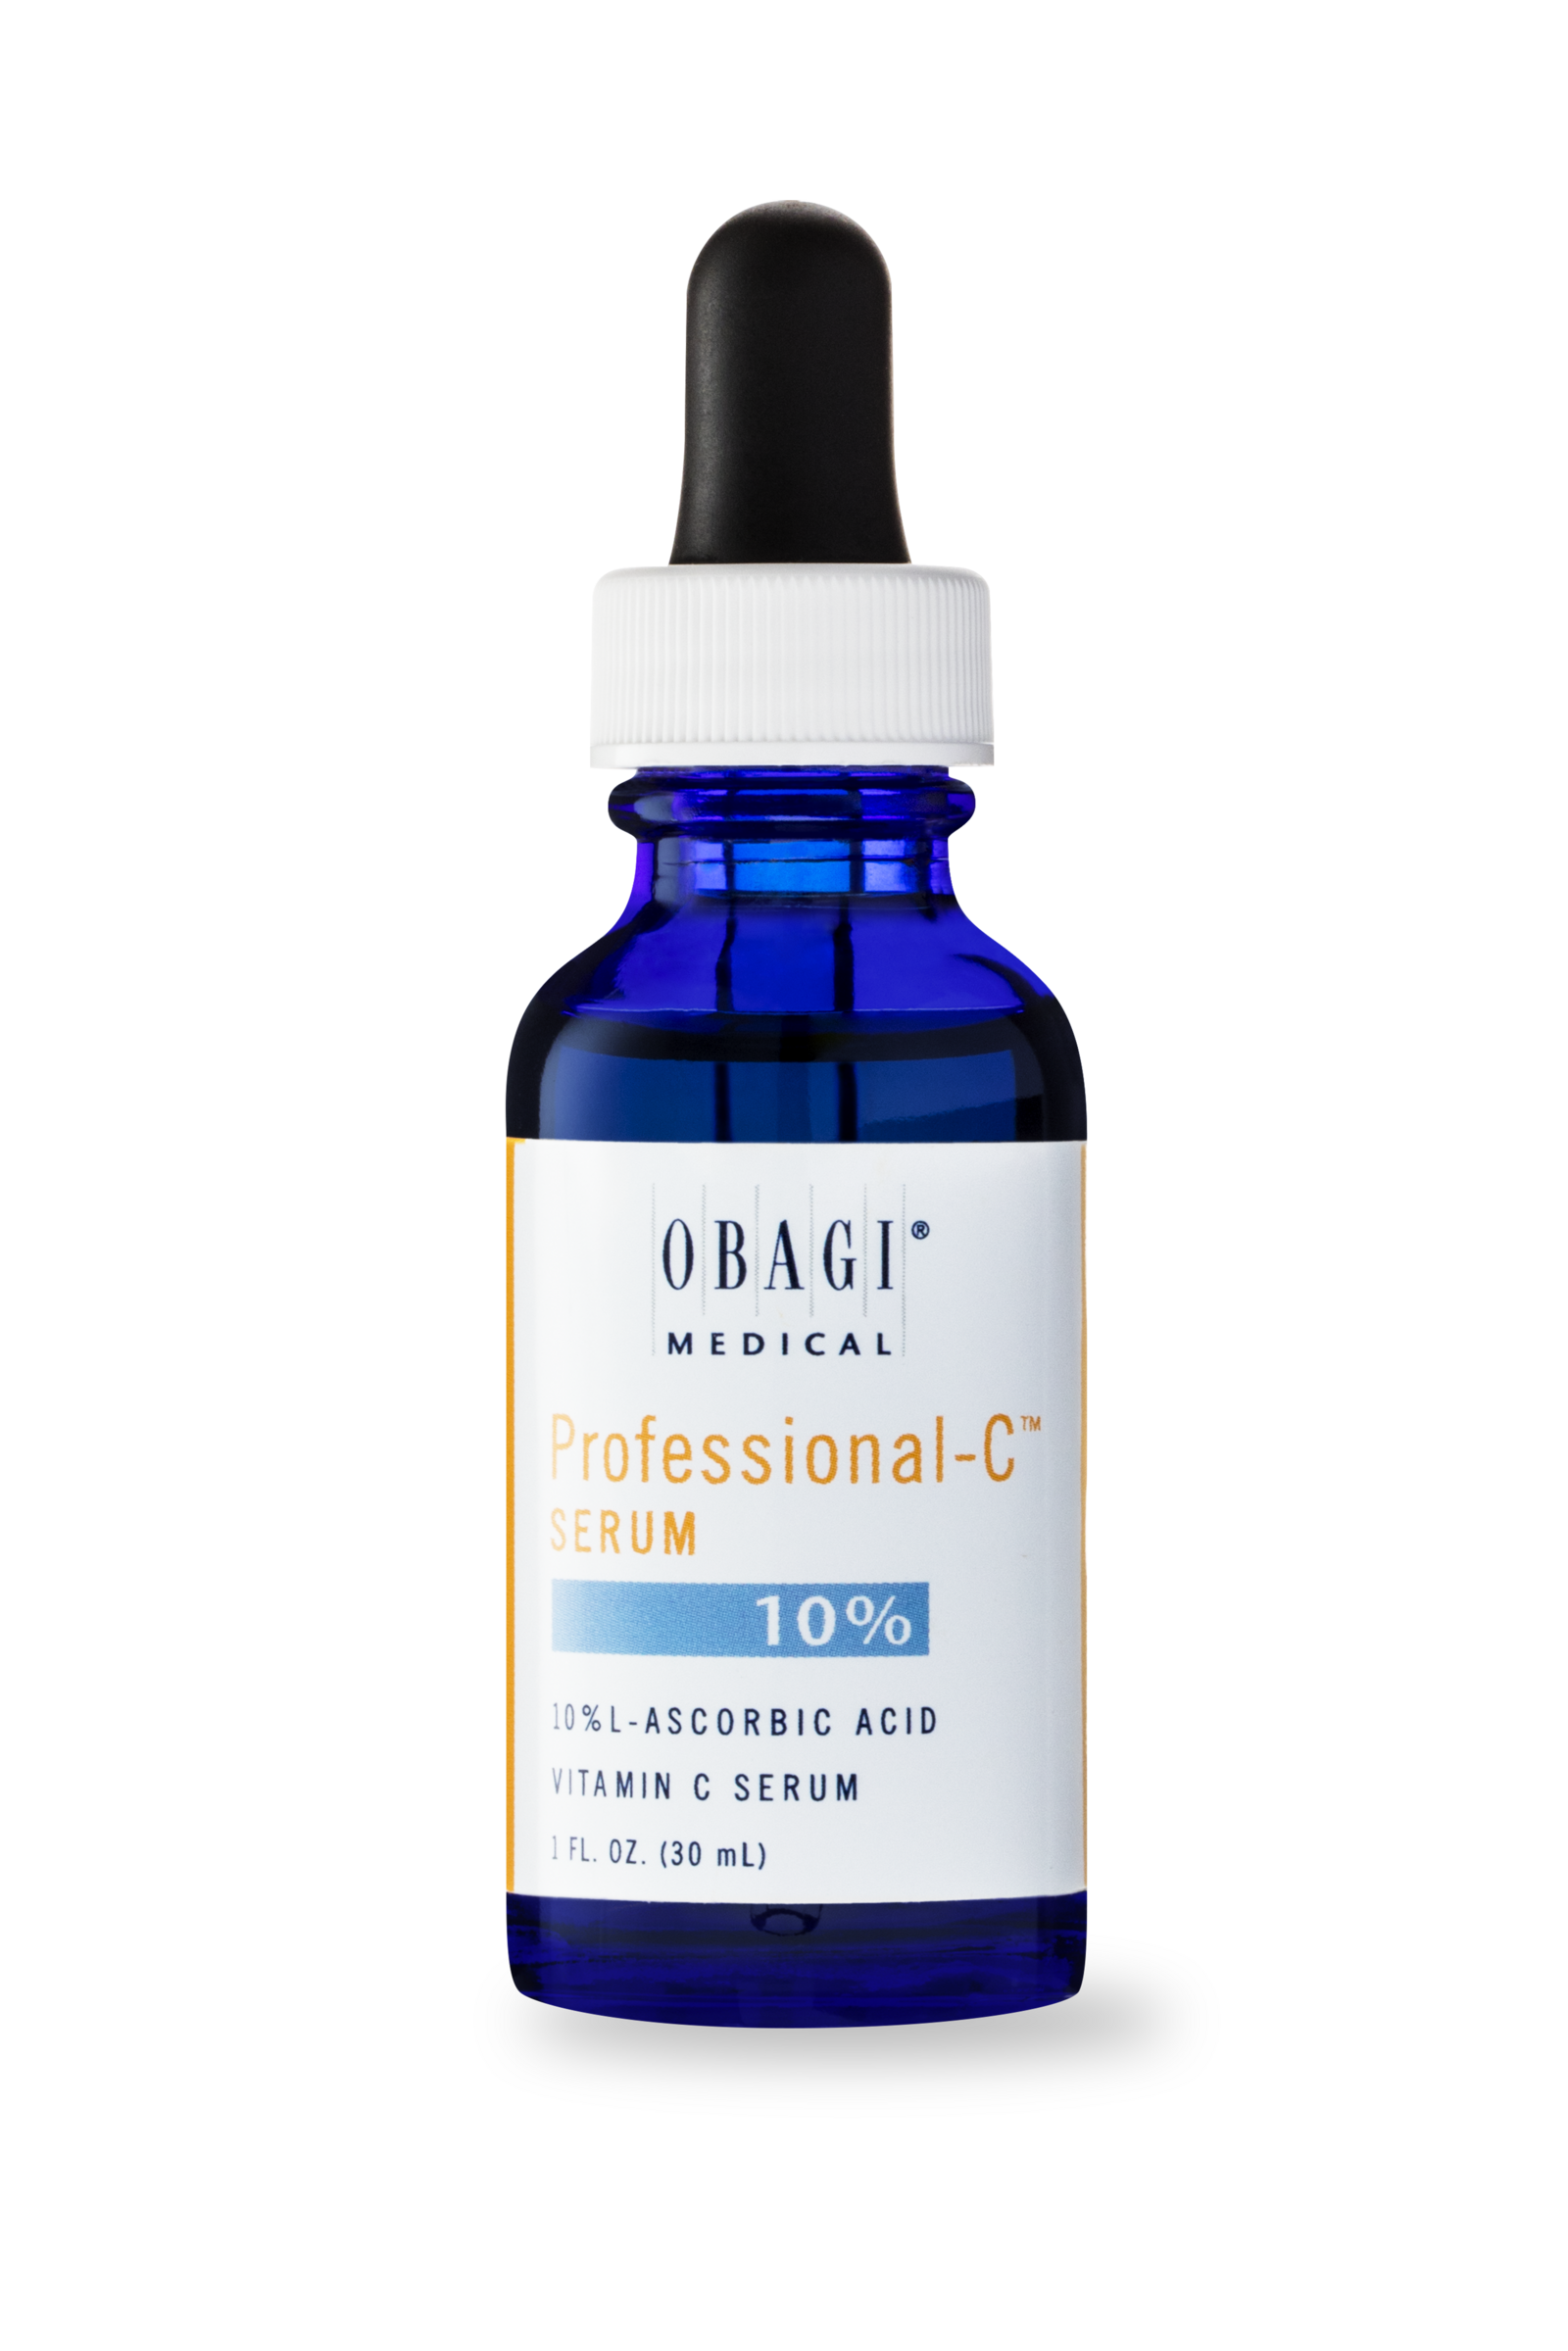 Obagi System Professional-C Vitamin C Serum 10% 1 oz - image 1 of 9